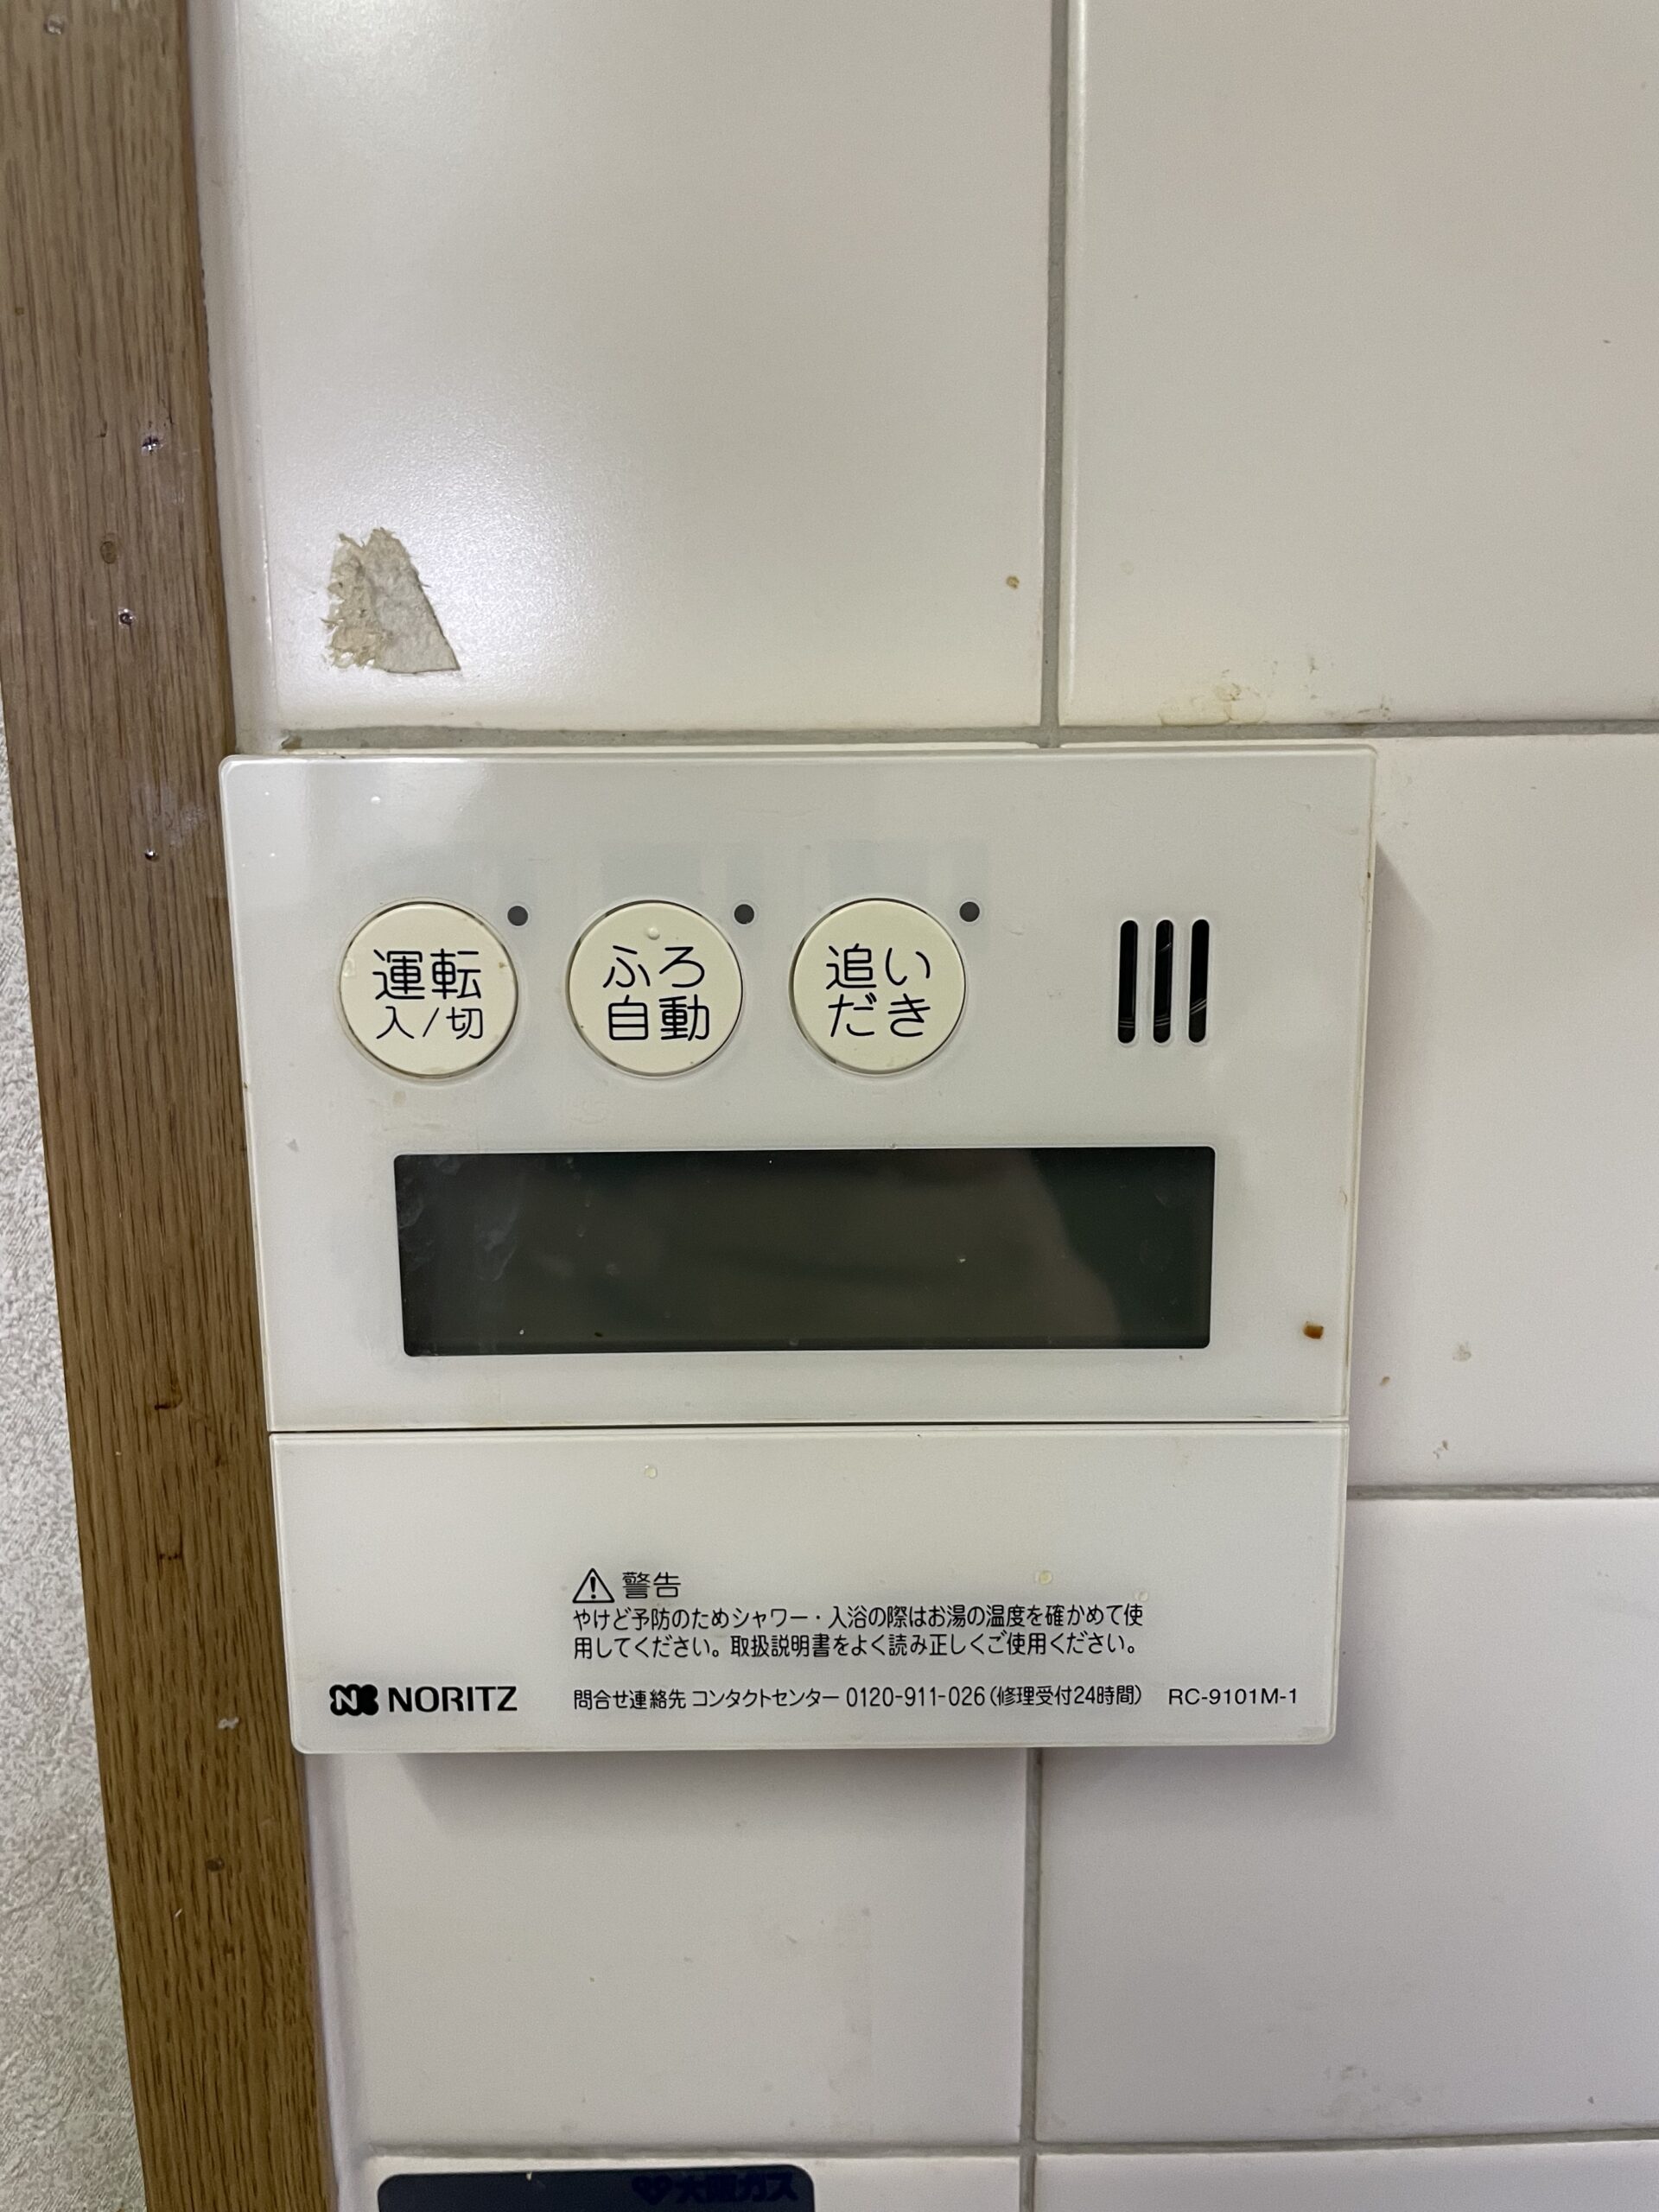 兵庫県神戸市ガス給湯器工事00007工事イメージ02